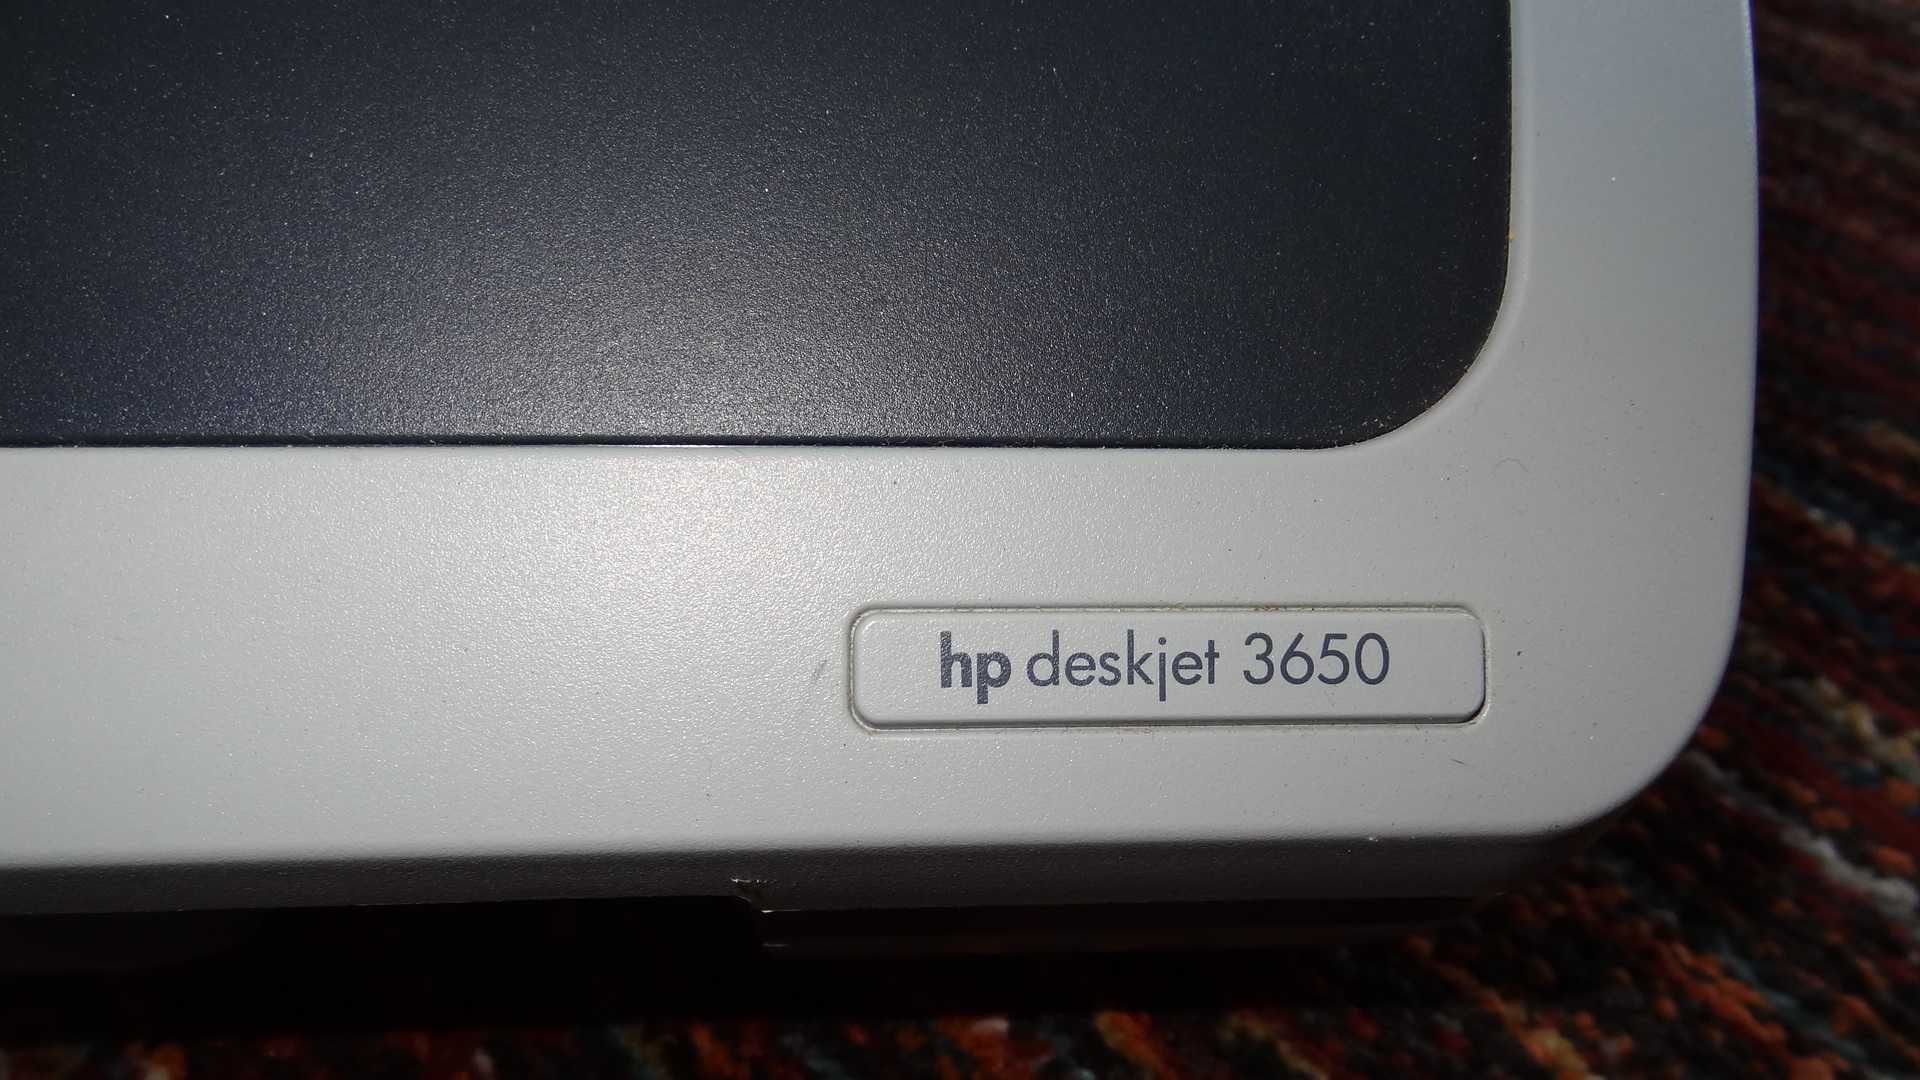 Impressora HP deskjet 3650 - NOVA